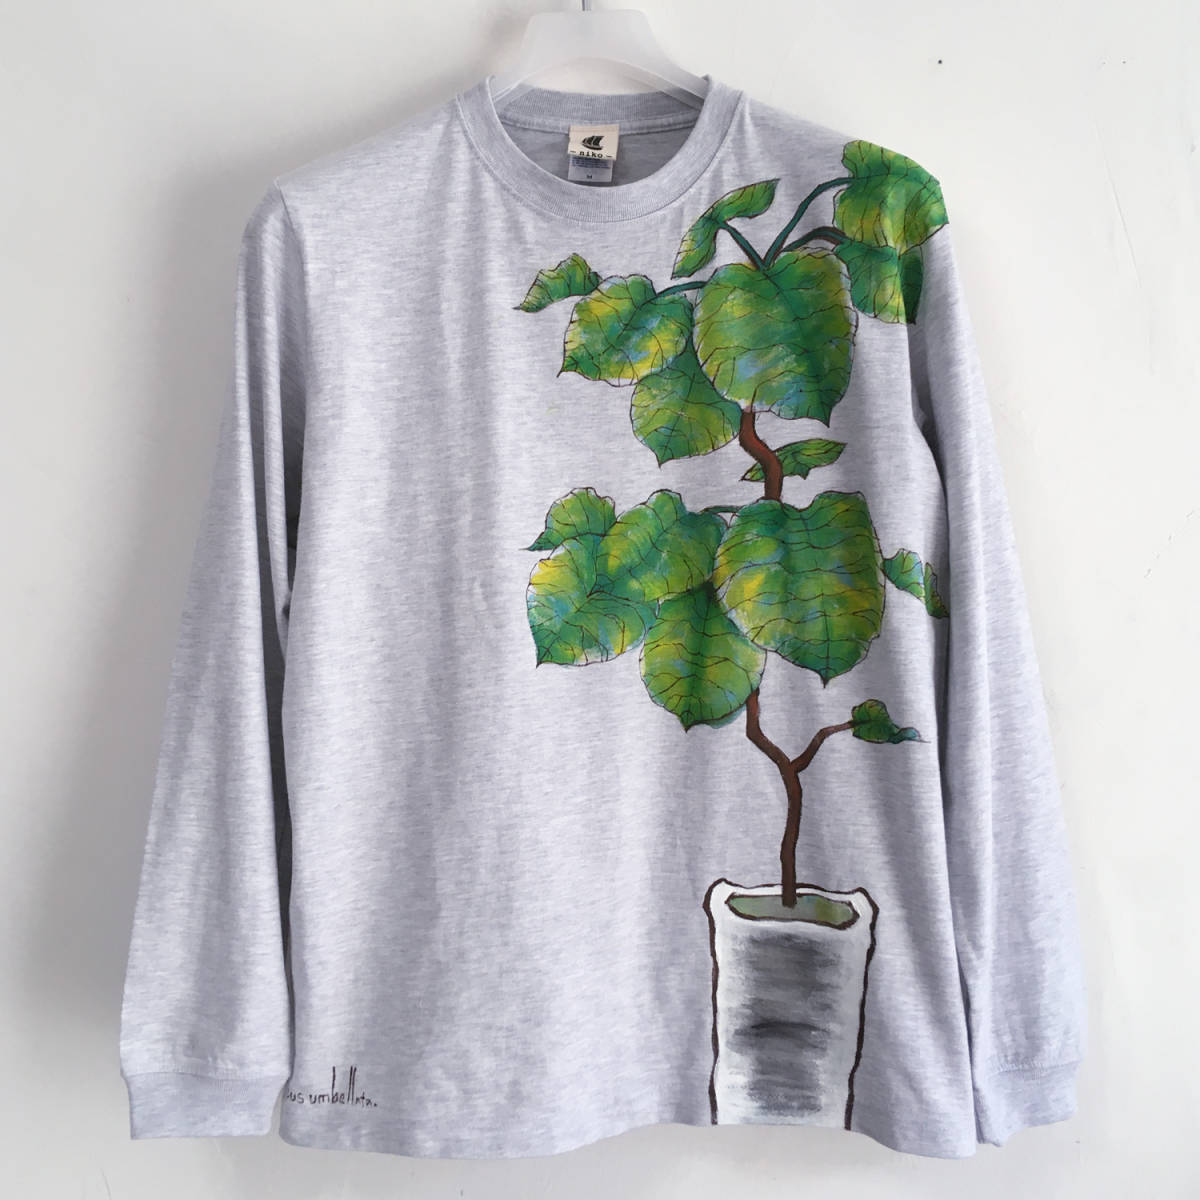 손그림 umbellata 무늬 소매 골지 롱 티셔츠 S 긴 소매 관엽 식물 보태니컬 롱 티셔츠, 티셔츠, 긴팔, S 사이즈